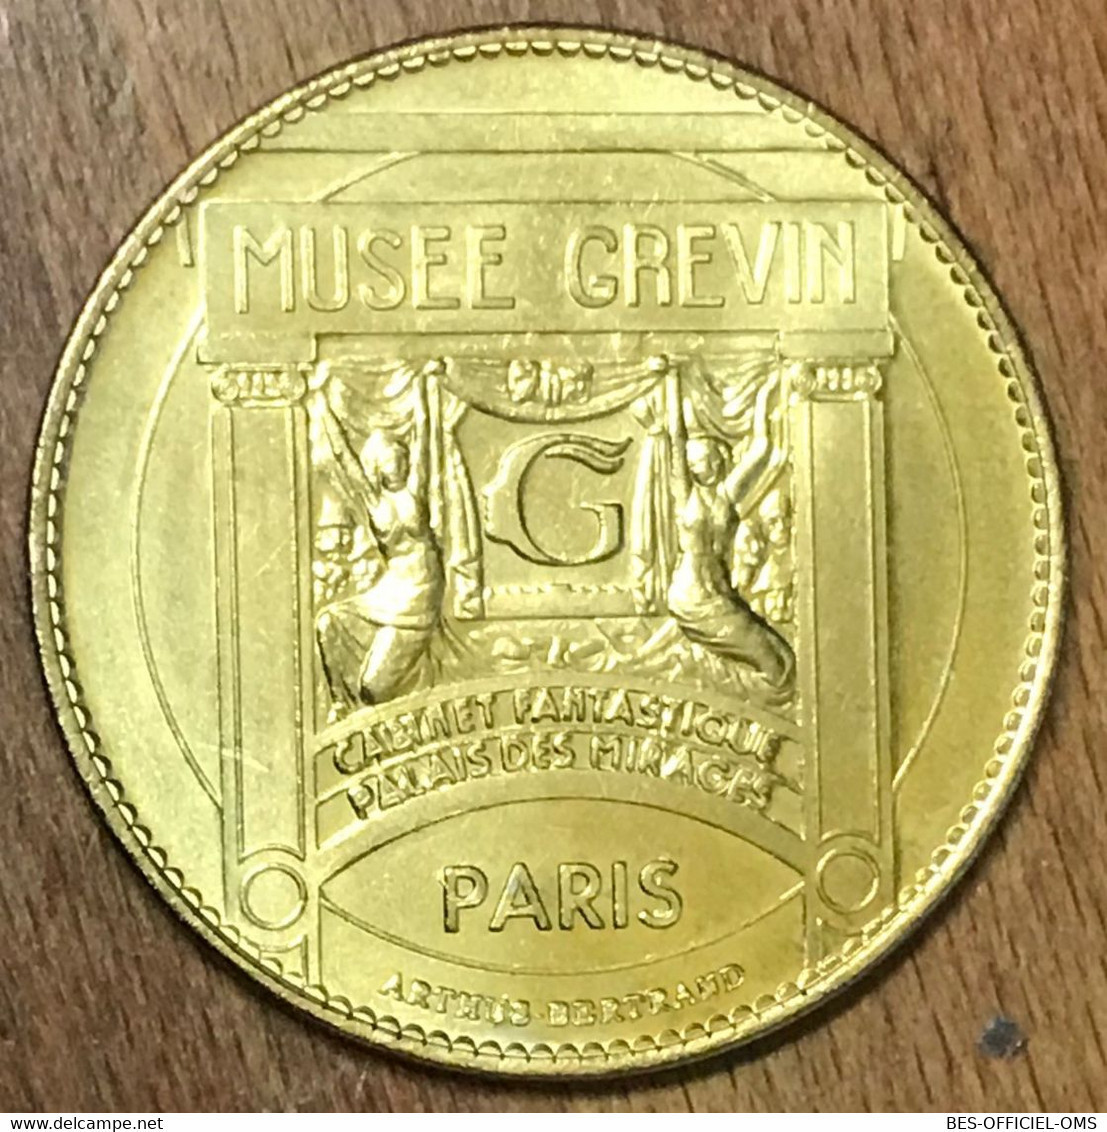 75009 MICHAEL JACKSON PARIS MUSÉE GRÉVIN AB MEDAILLE ARTHUS-BERTRAND JETON TOURISTIQUE MEDALS COINS TOKENS - Sin Fecha